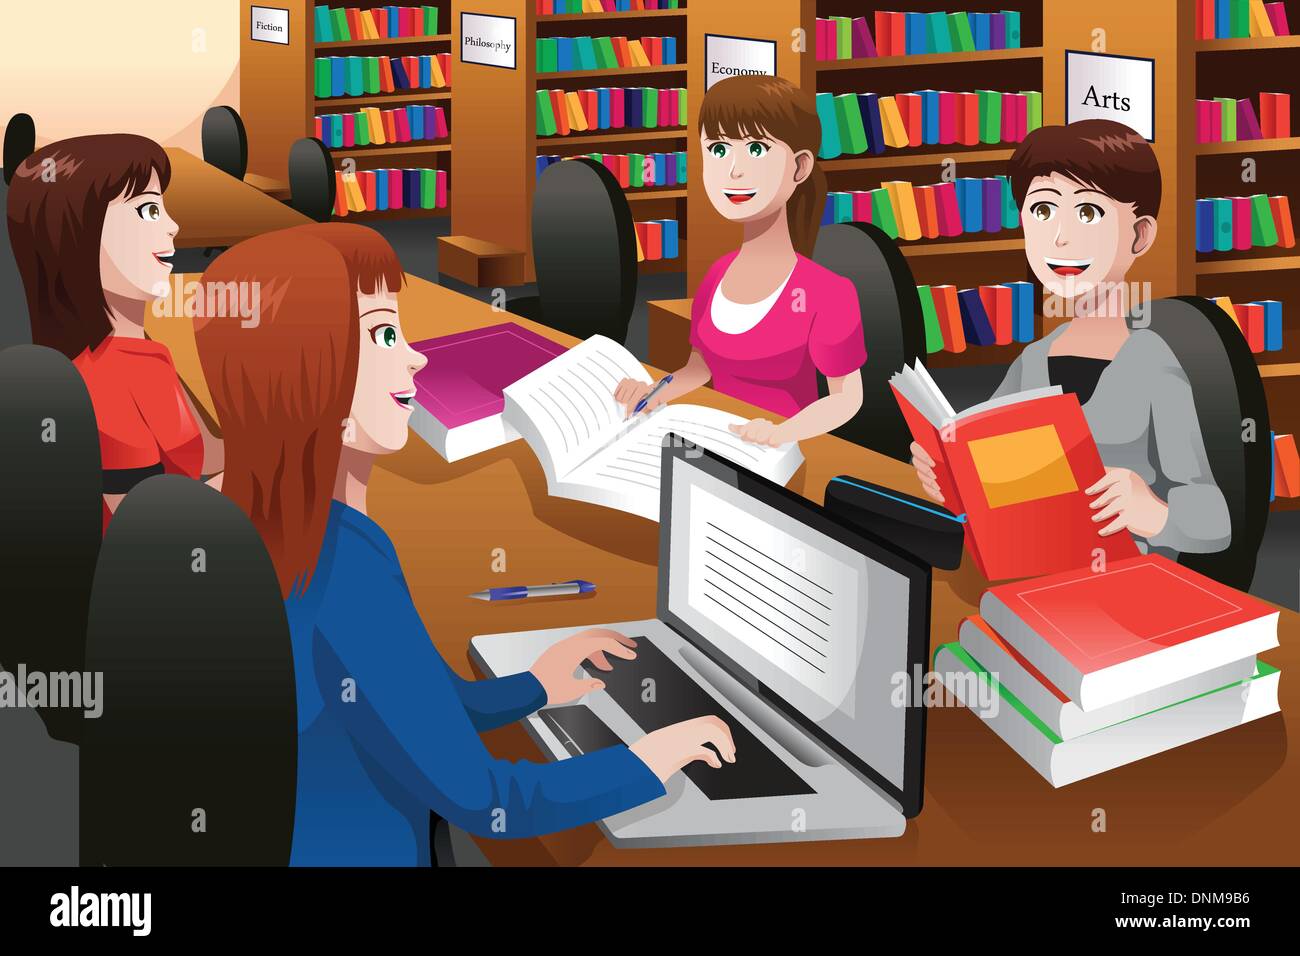 Un vecteur illustration de college students studying in a library ensemble Illustration de Vecteur